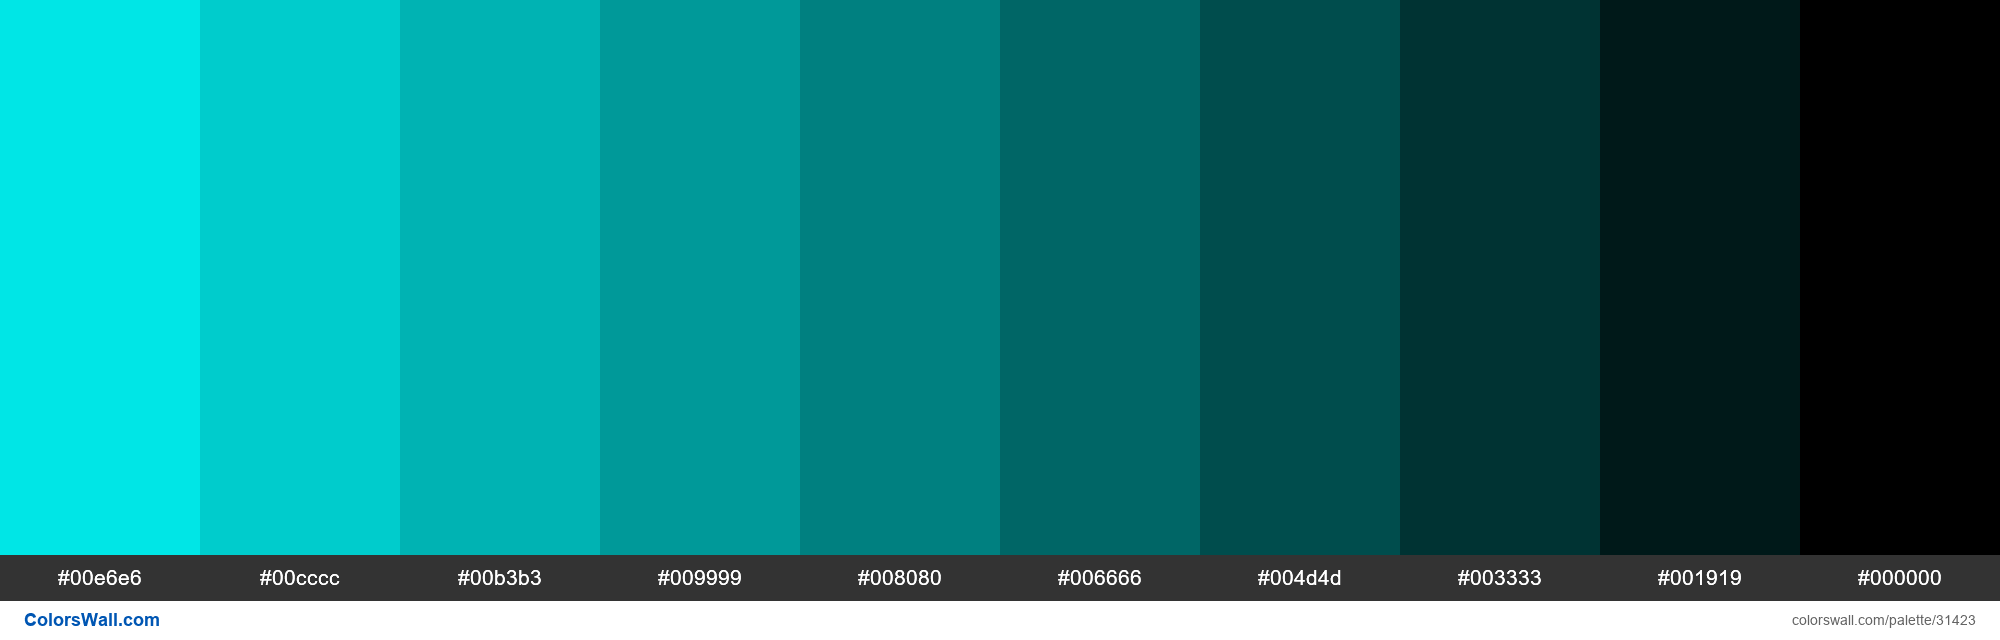 Shades X11 Color Aqua 00ffff Hex Colorswall